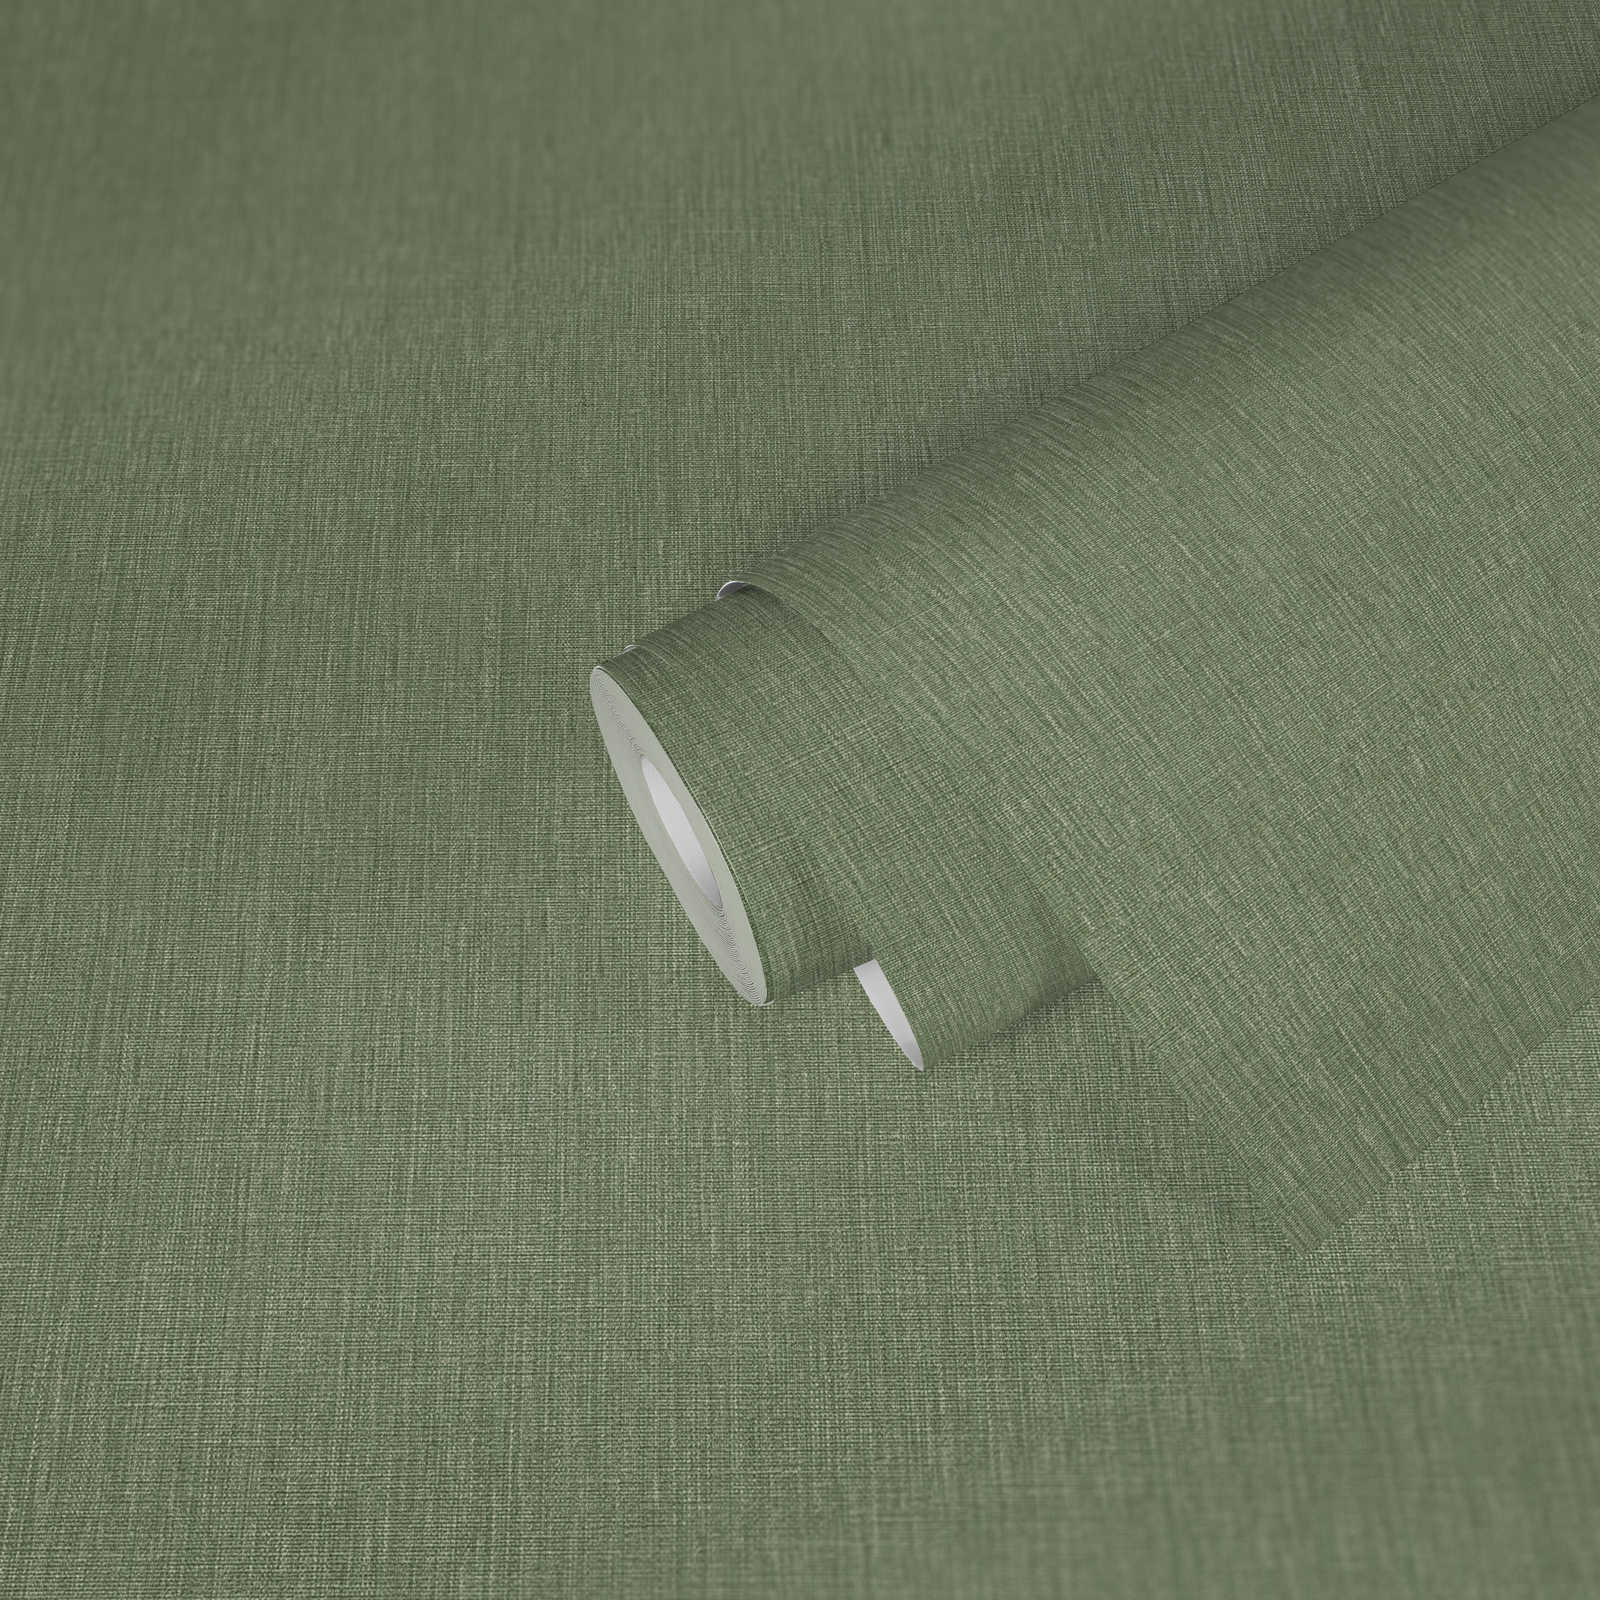             Carta da parati non tessuta a trama leggera in look tessile - verde
        